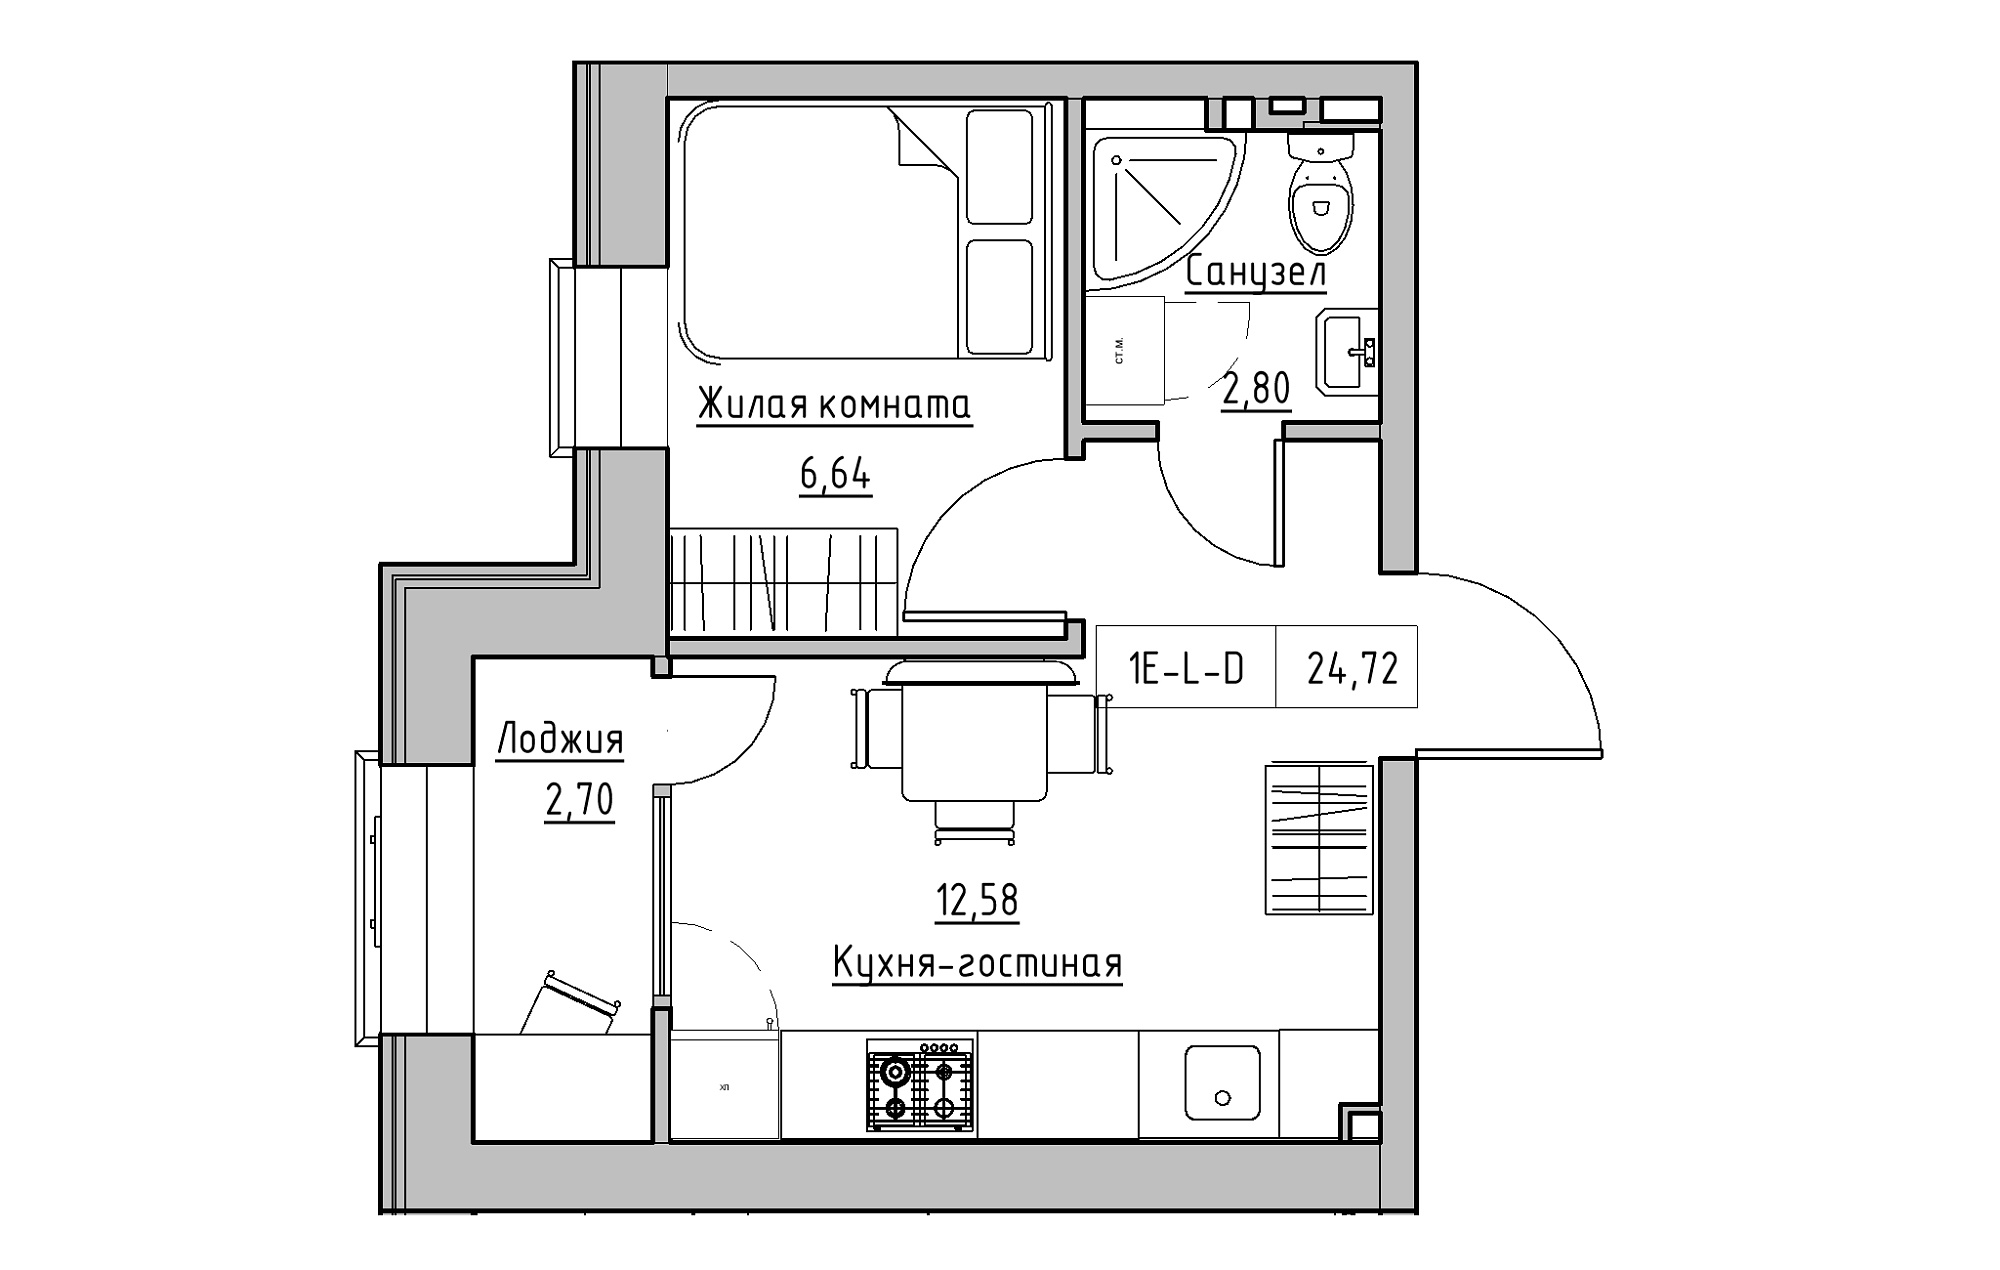 Планировка 1-к квартира площей 24.72м2, KS-018-05/0016.